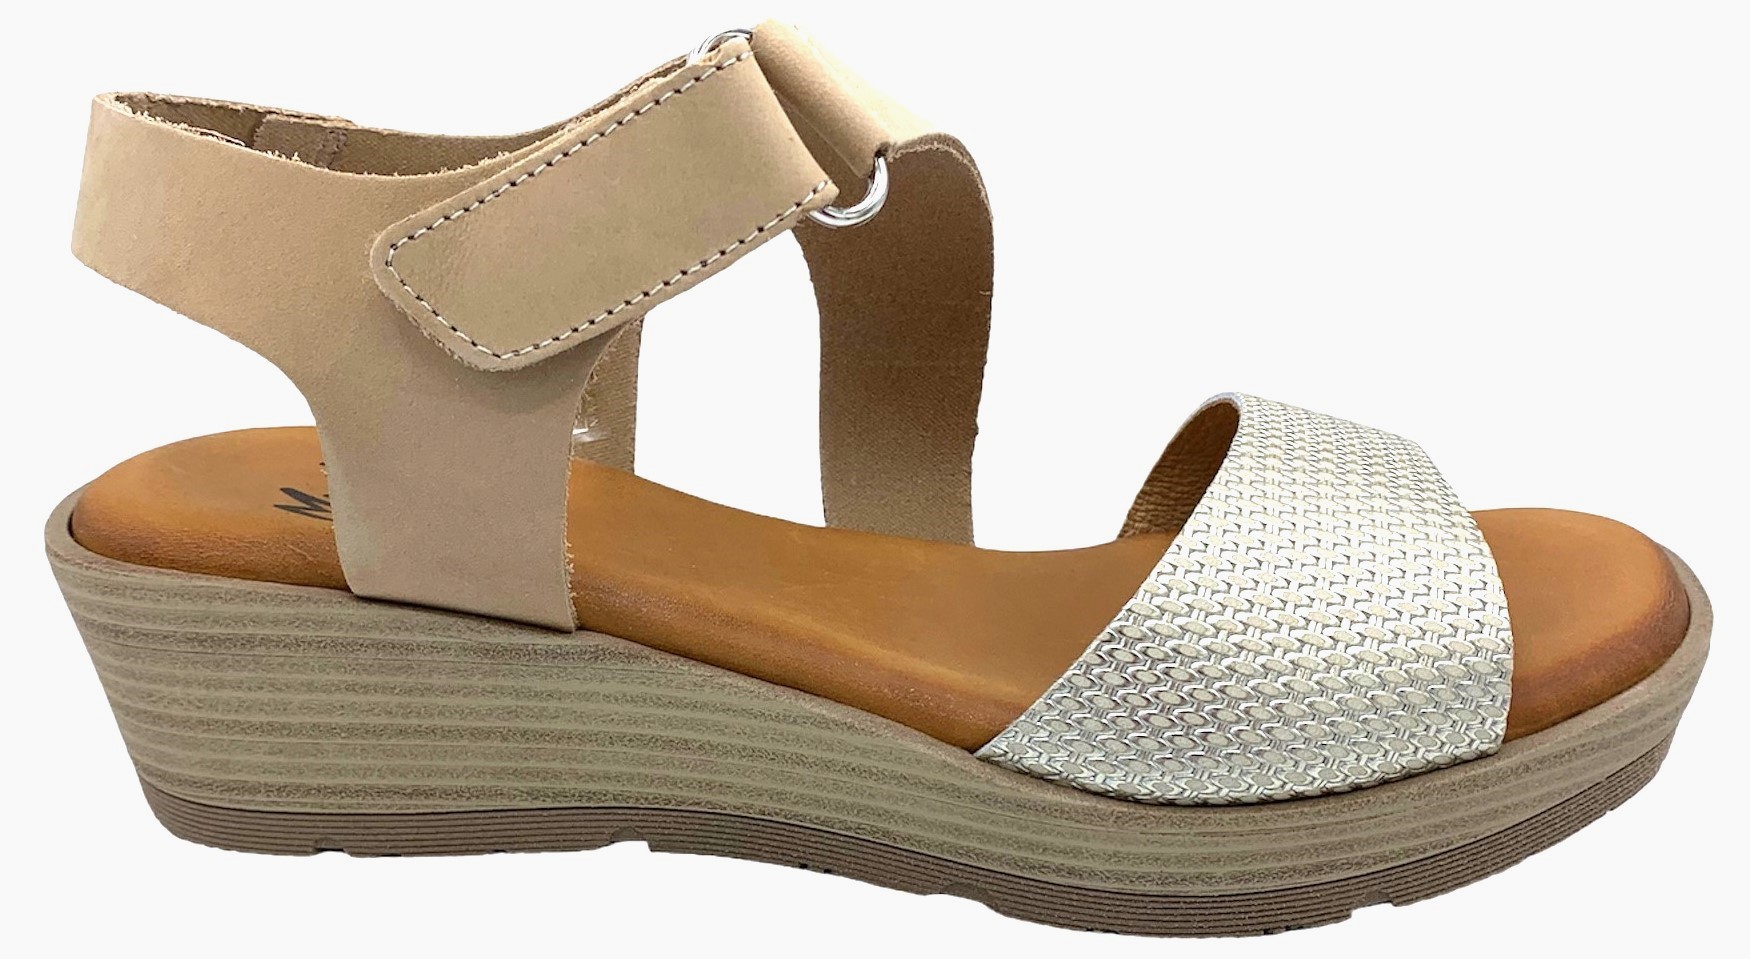 Dámské kožené sandále na klínku MISSTIC 100140 béžové Velikost: 41 (EU)